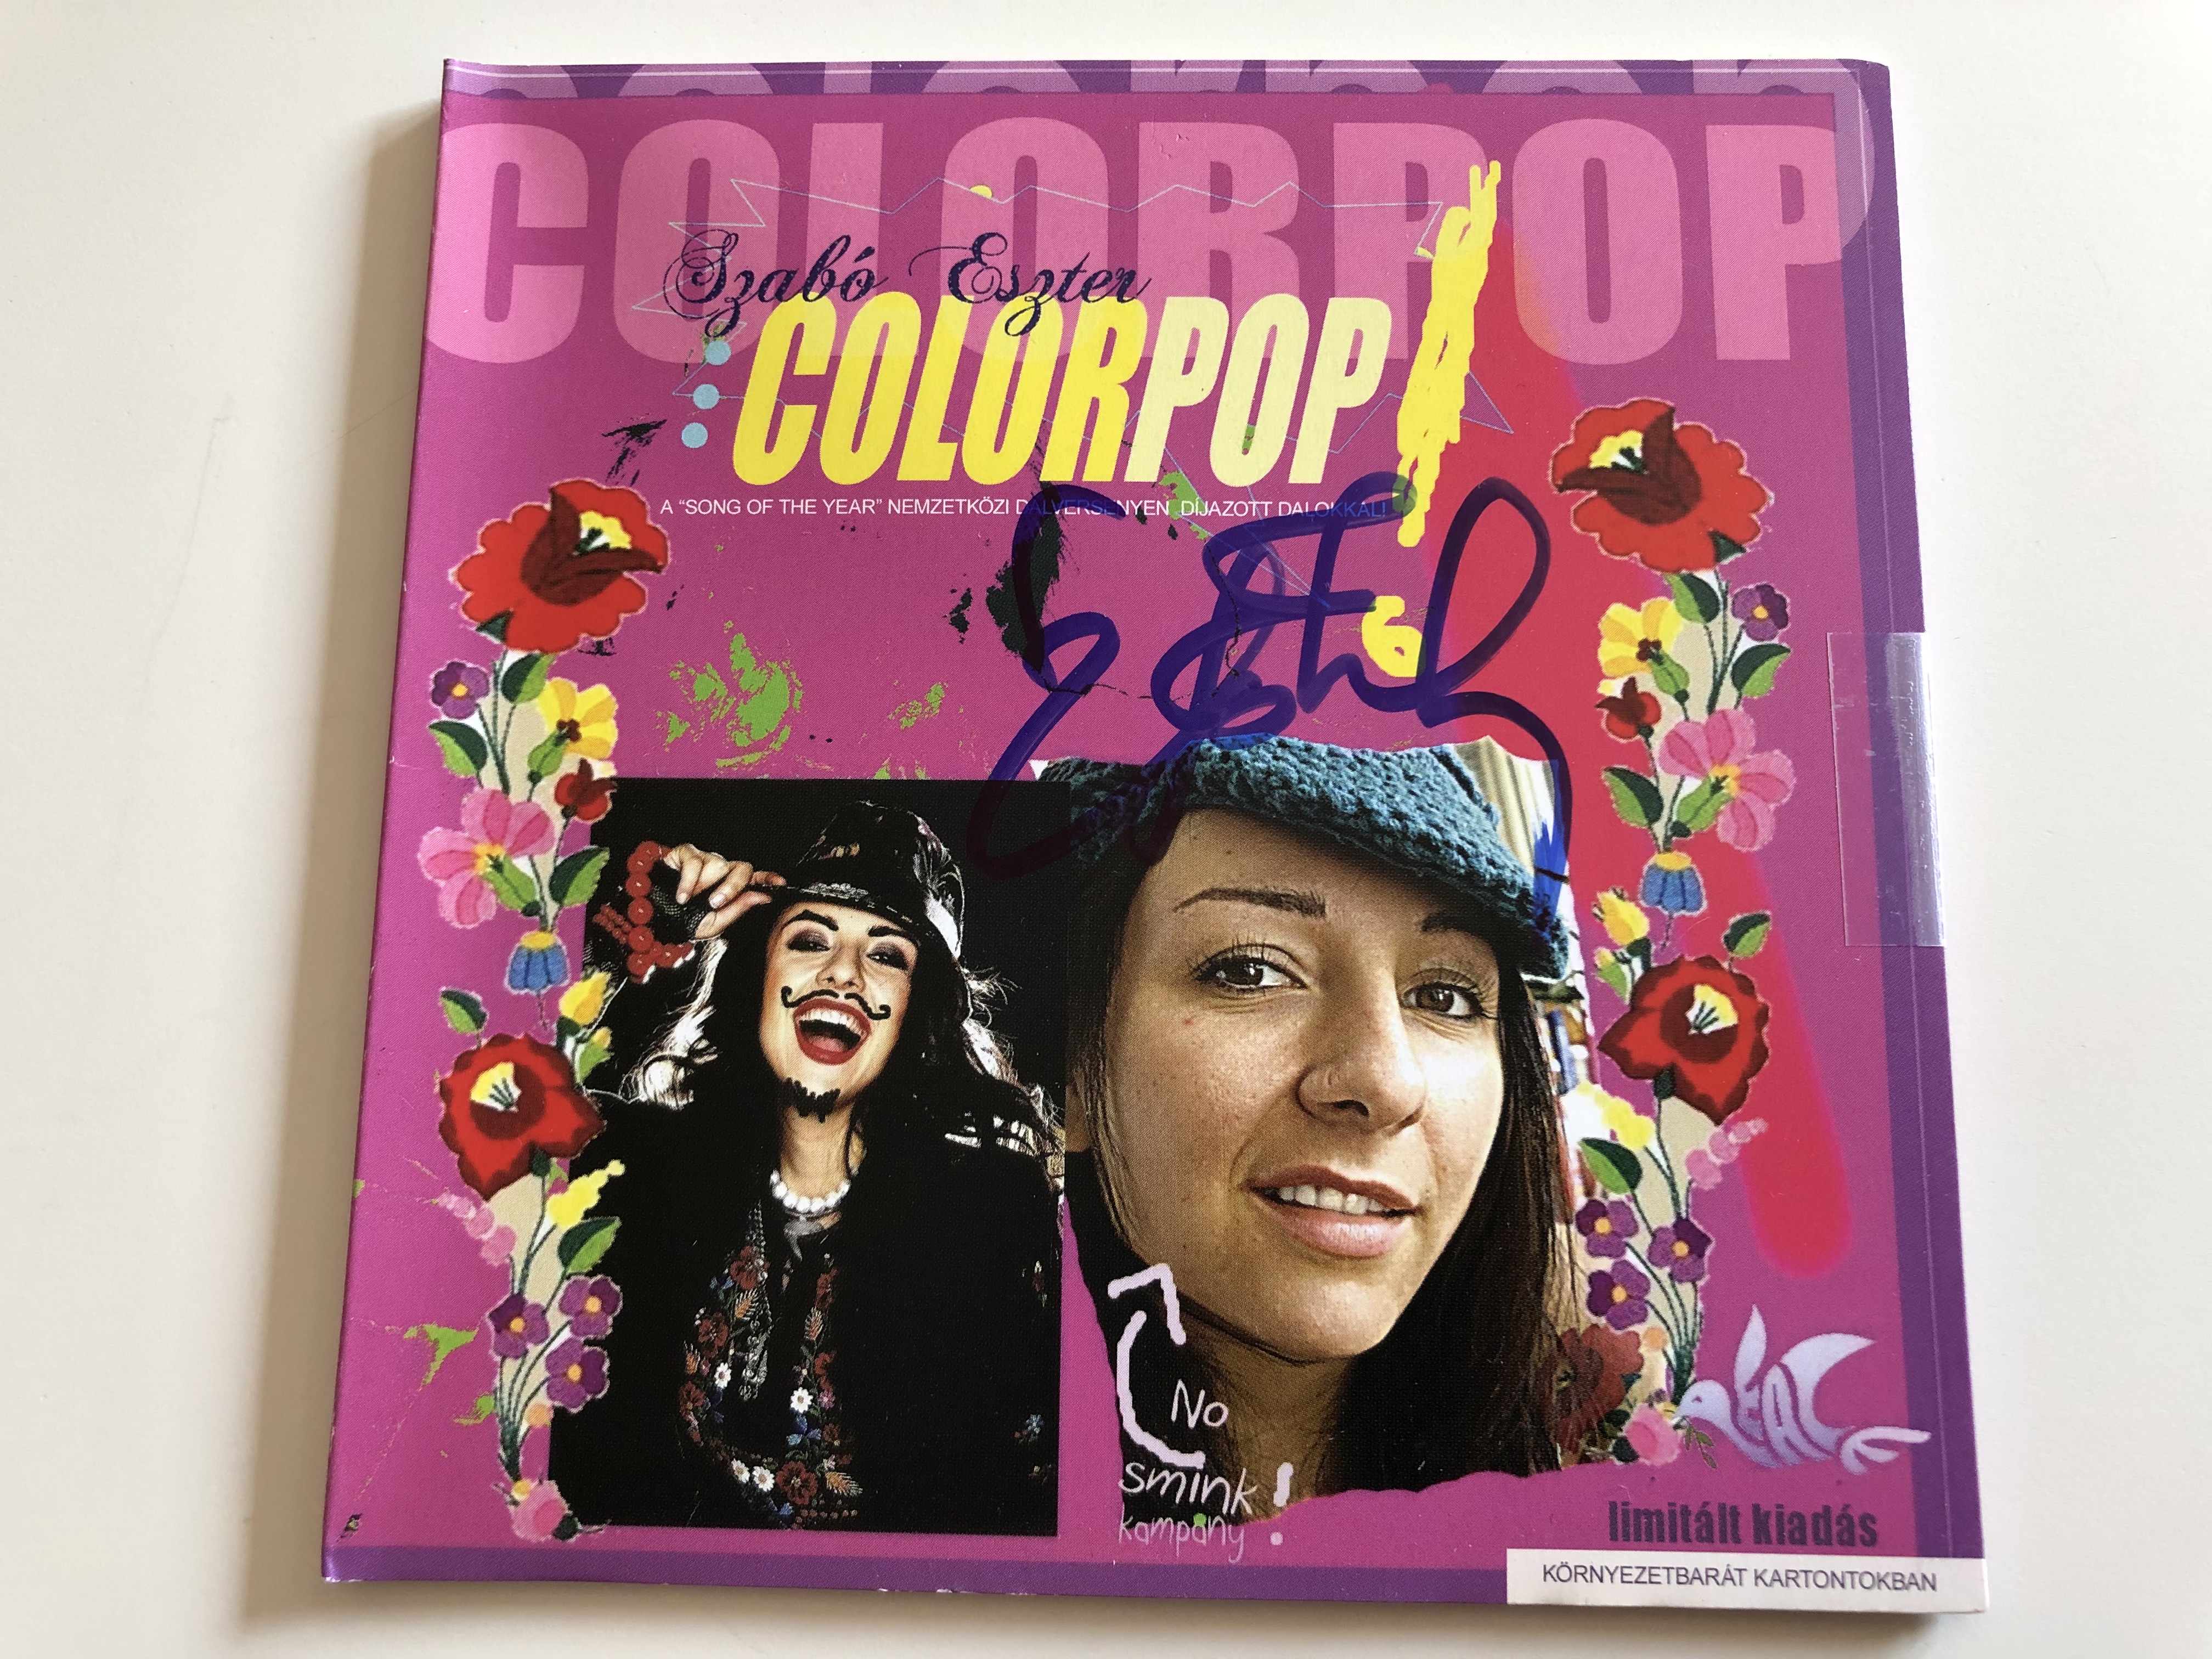 szab-eszter-colorpop-limited-edition-audio-cd-2009-a-nemzetk-zi-song-of-the-year-dalversenyen-d-jazott-dalok-1-.jpg